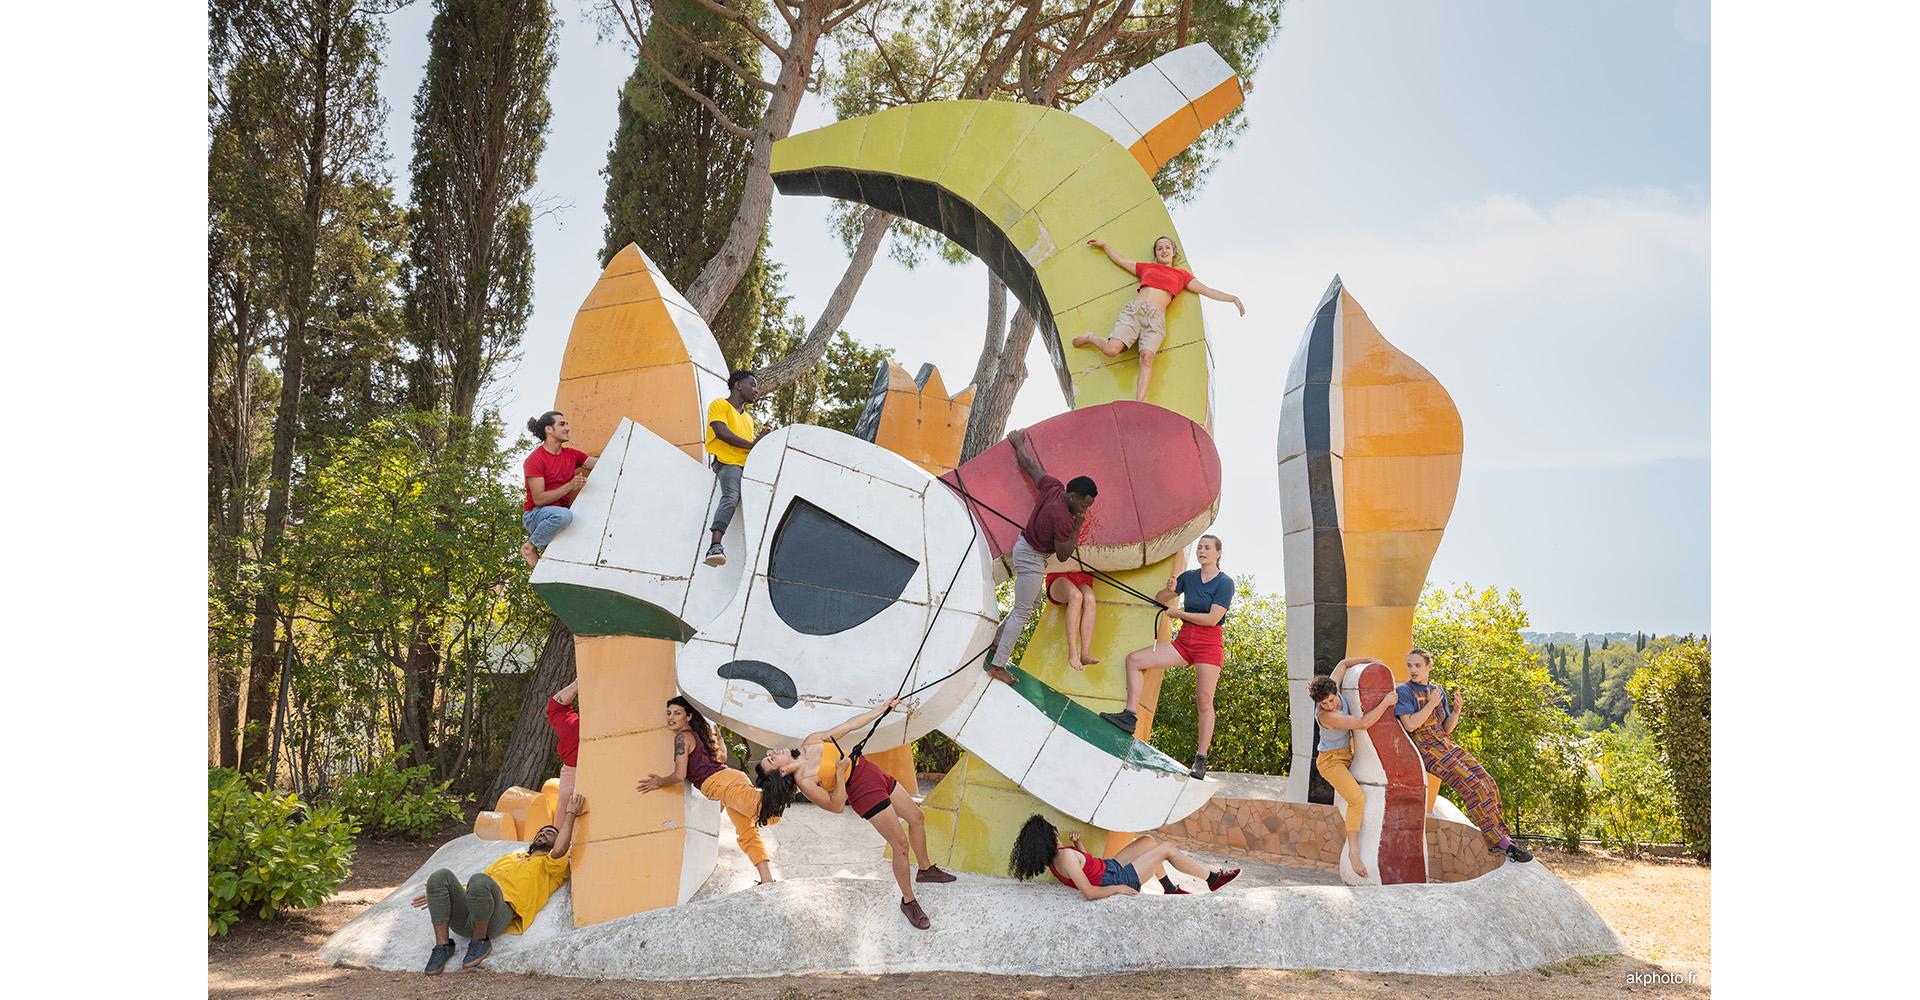 Cirque, Piste d'Azur, Le jardin d'enfants, sculpture de plein air d'après un projet de Fernand Léger. Photo (c) akphoto.fr (c) Adagp, 2022